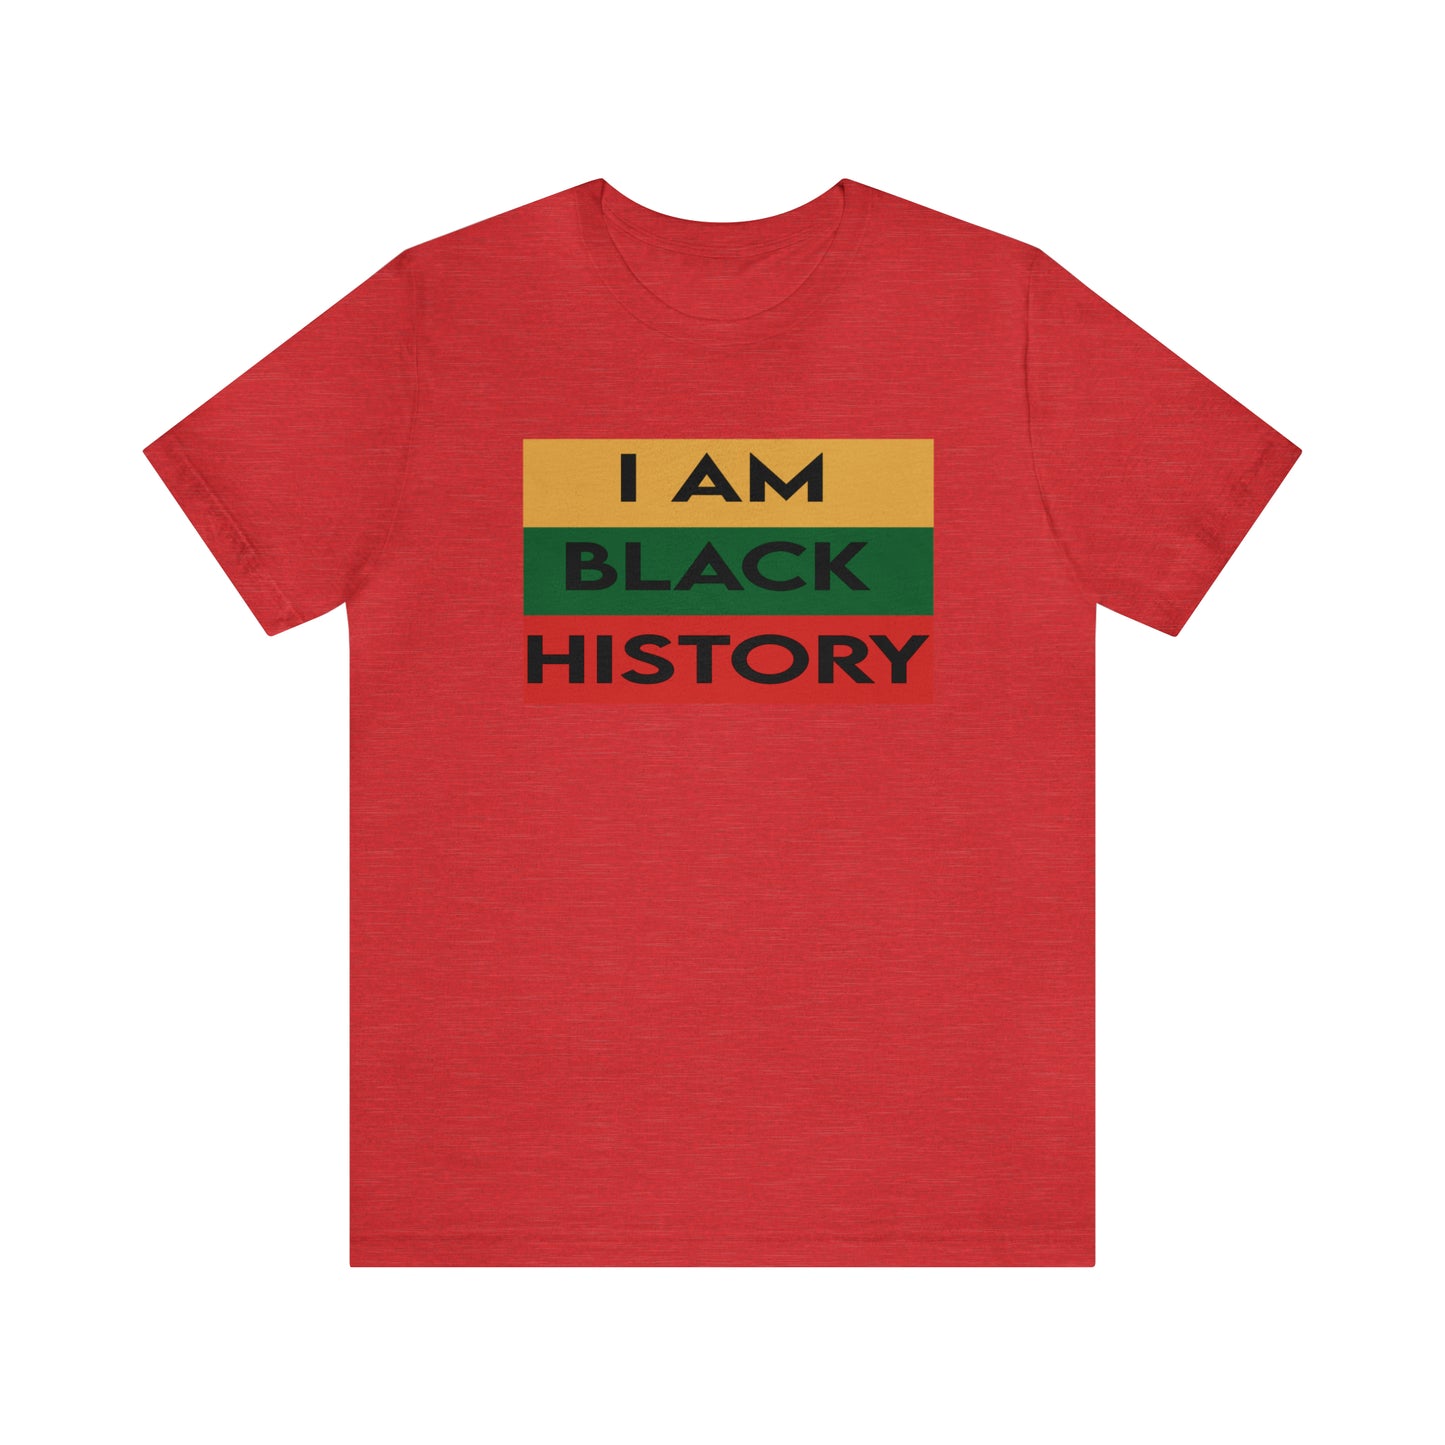 "I am Black History" Short Sleeve Tee